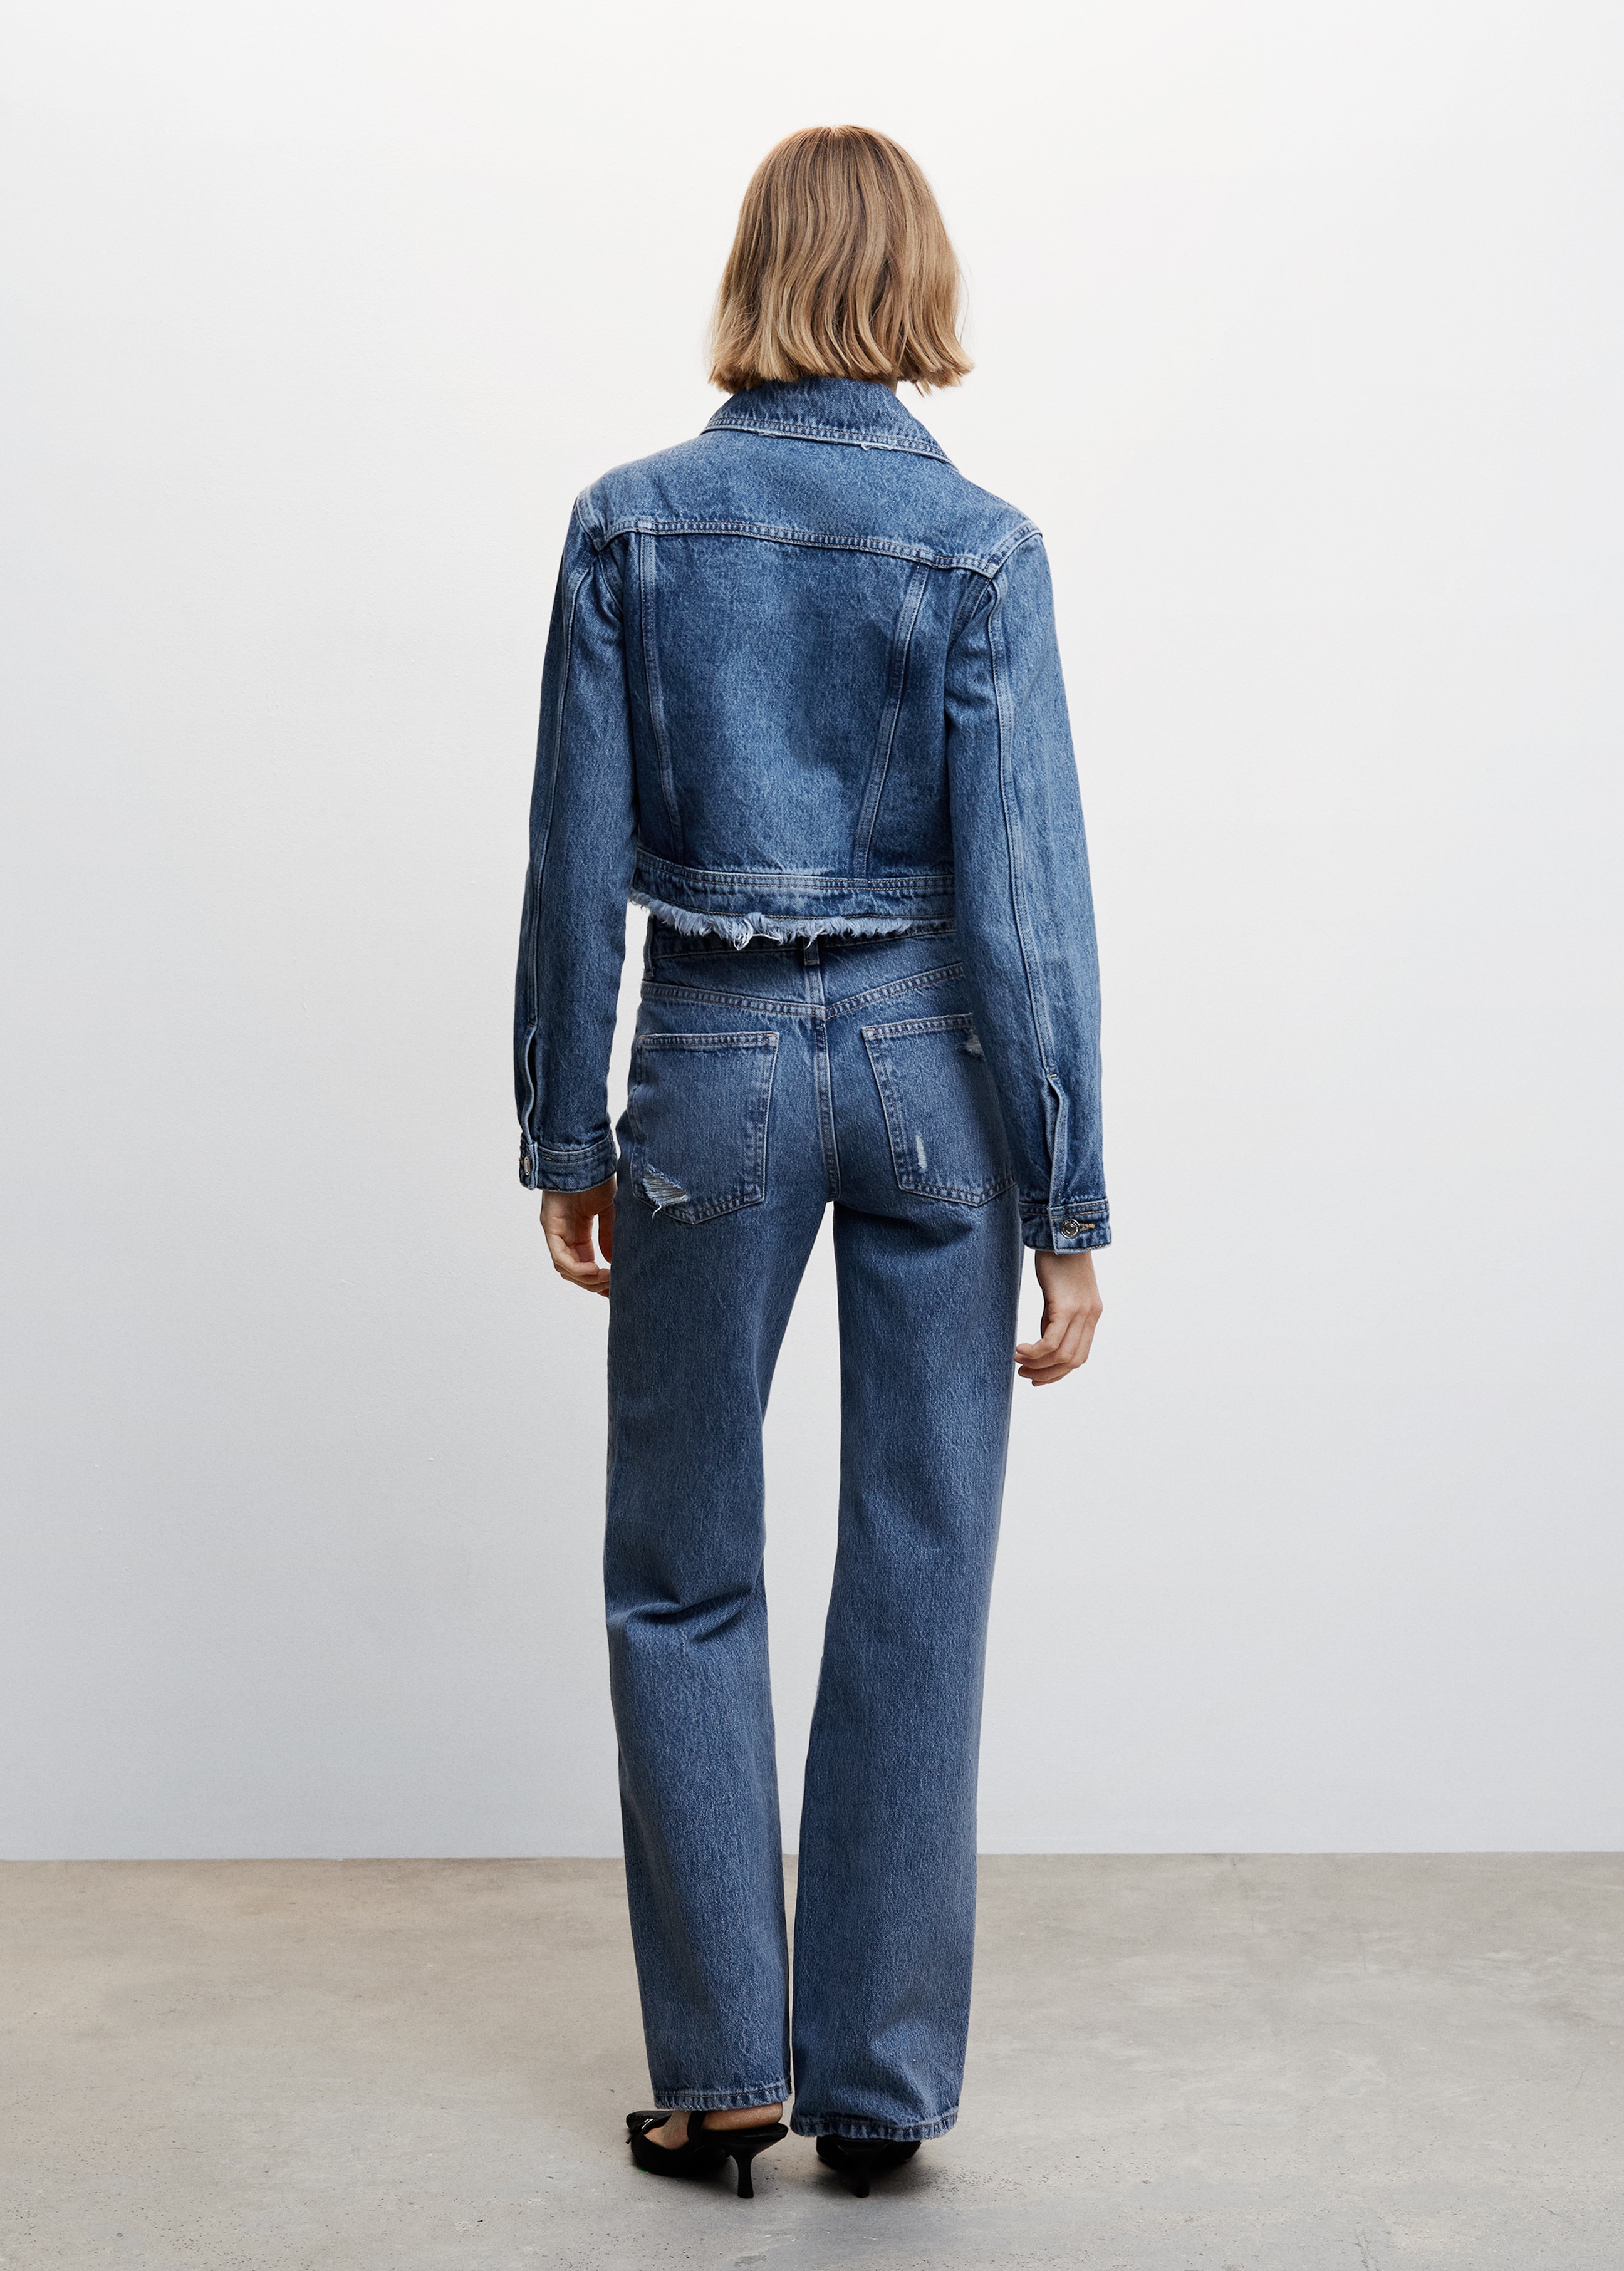 Gerade Jeans mit hohem Bund und Zierrissen - Rückseite des Artikels